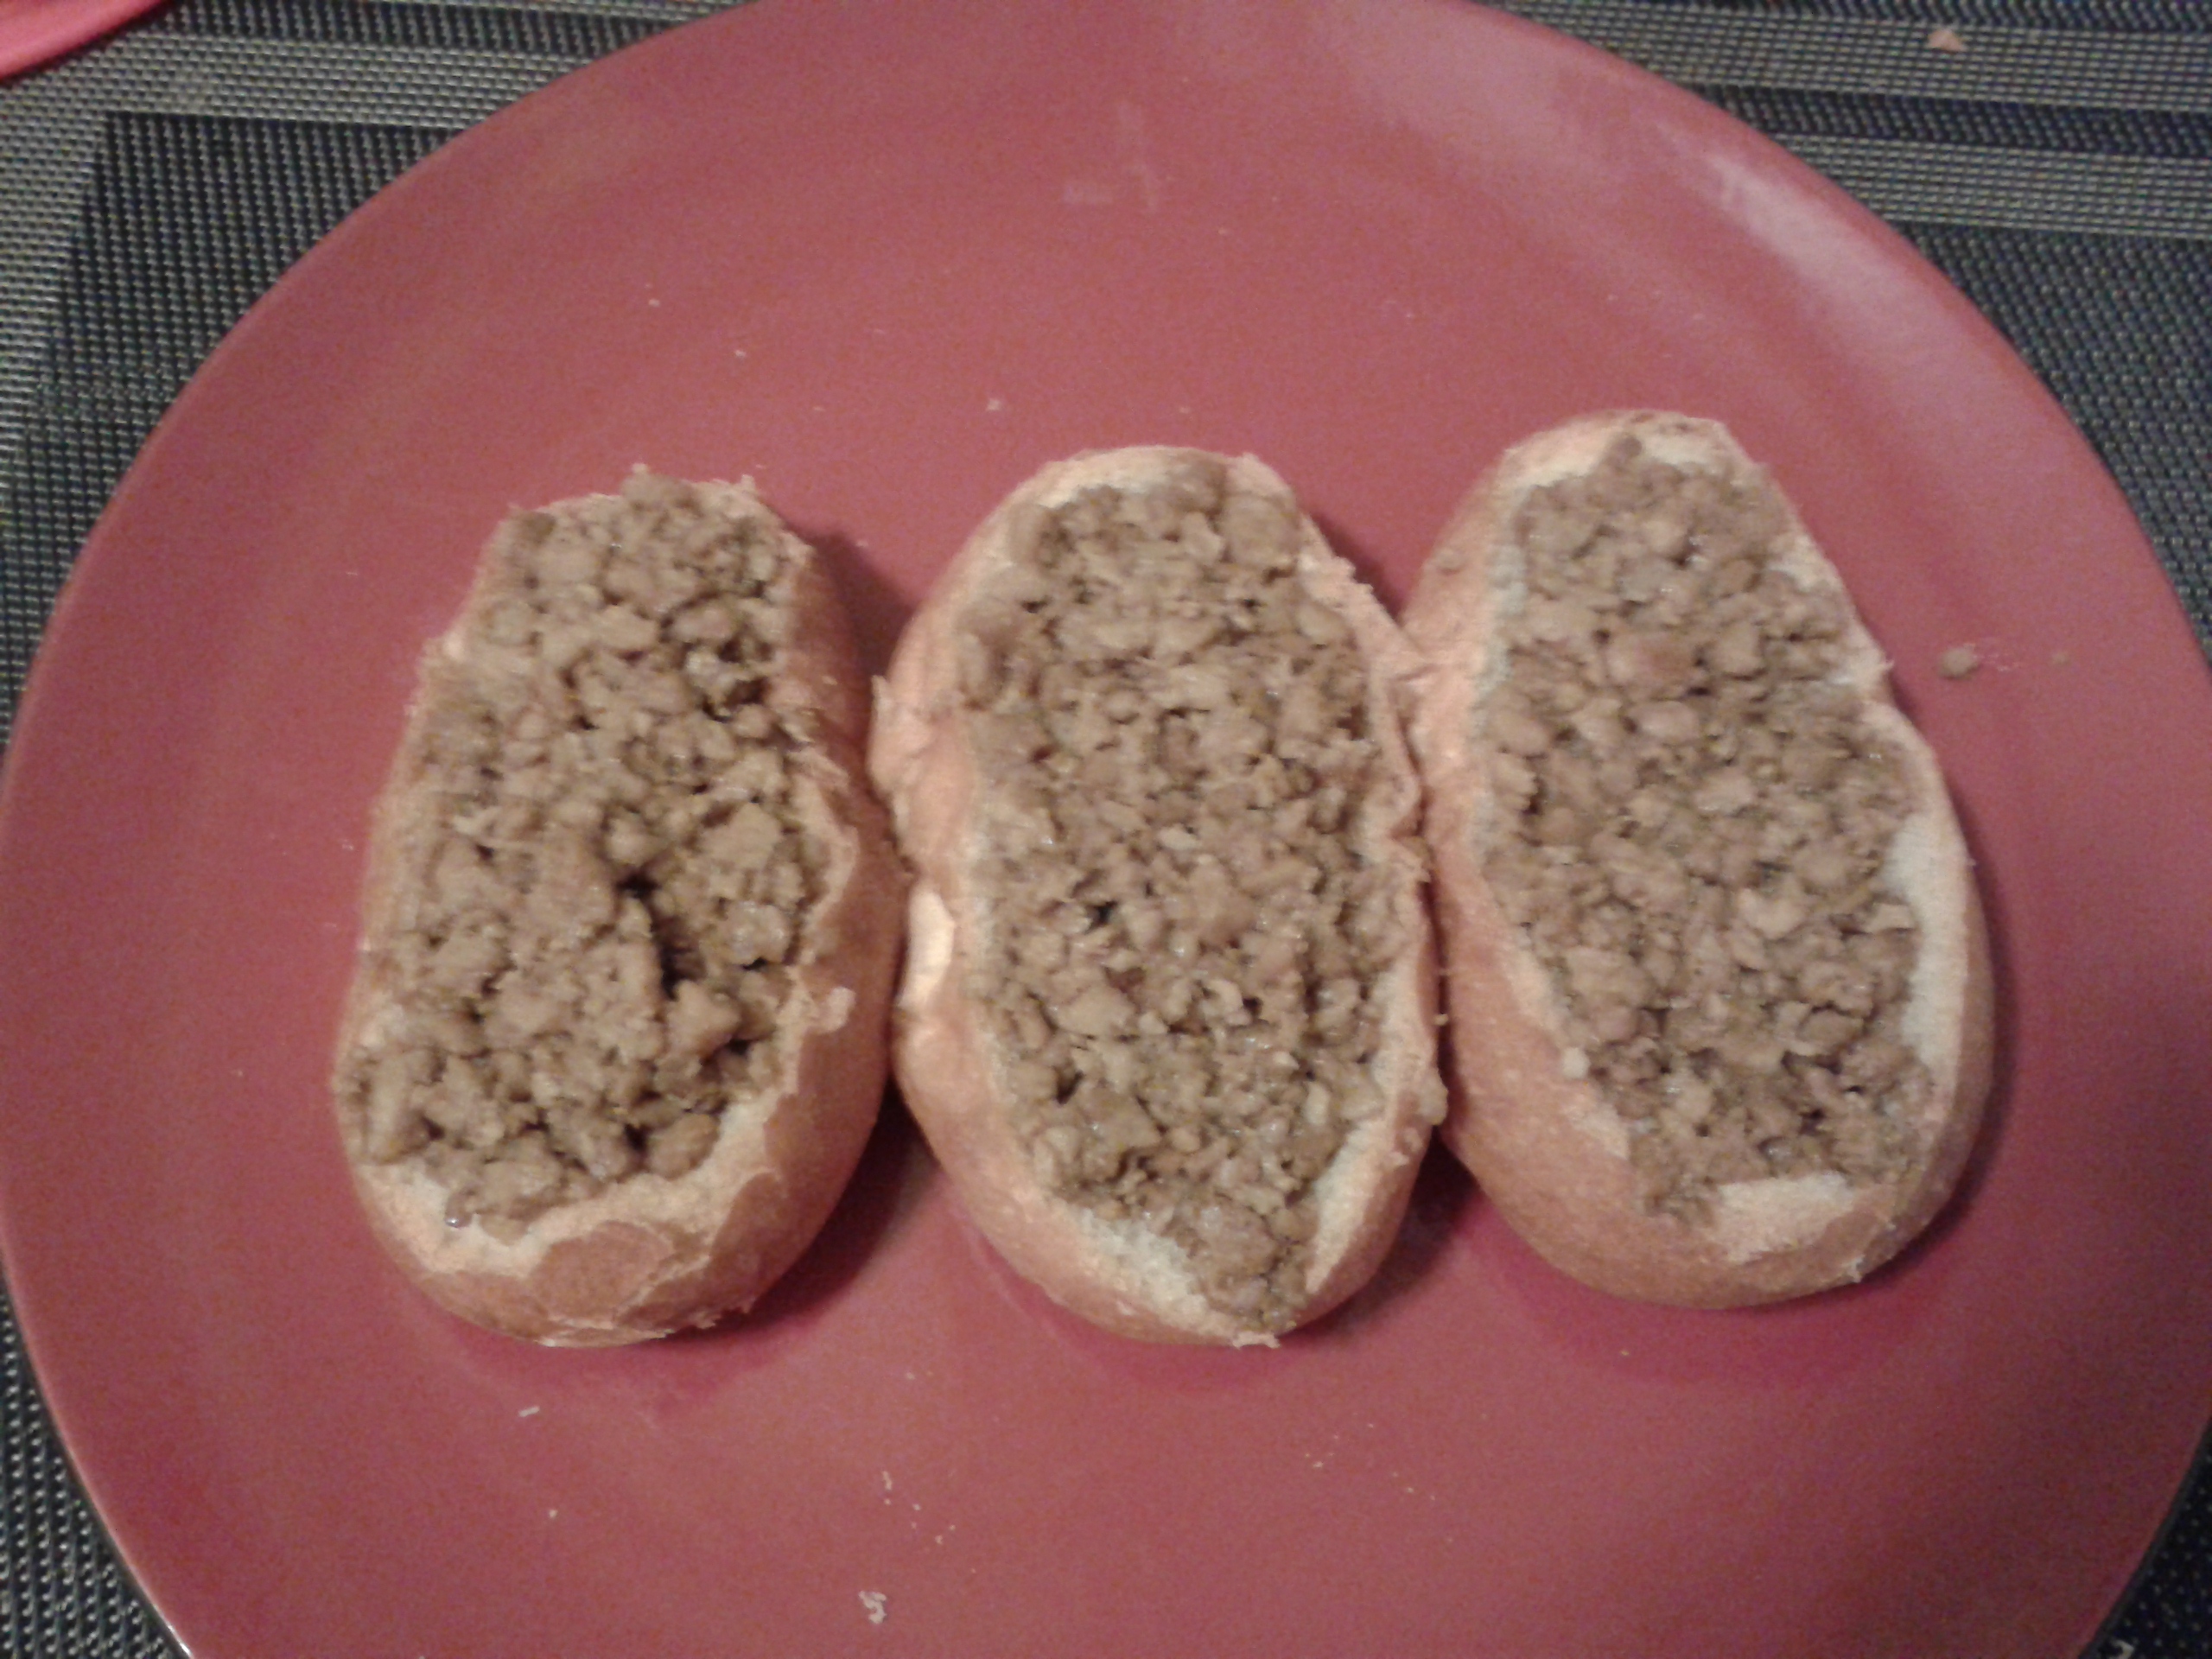 Finalement, deux pains fourrés étaient amplement suffisants (je pouvais en manger jusqu'à 4 de la version avec viande).